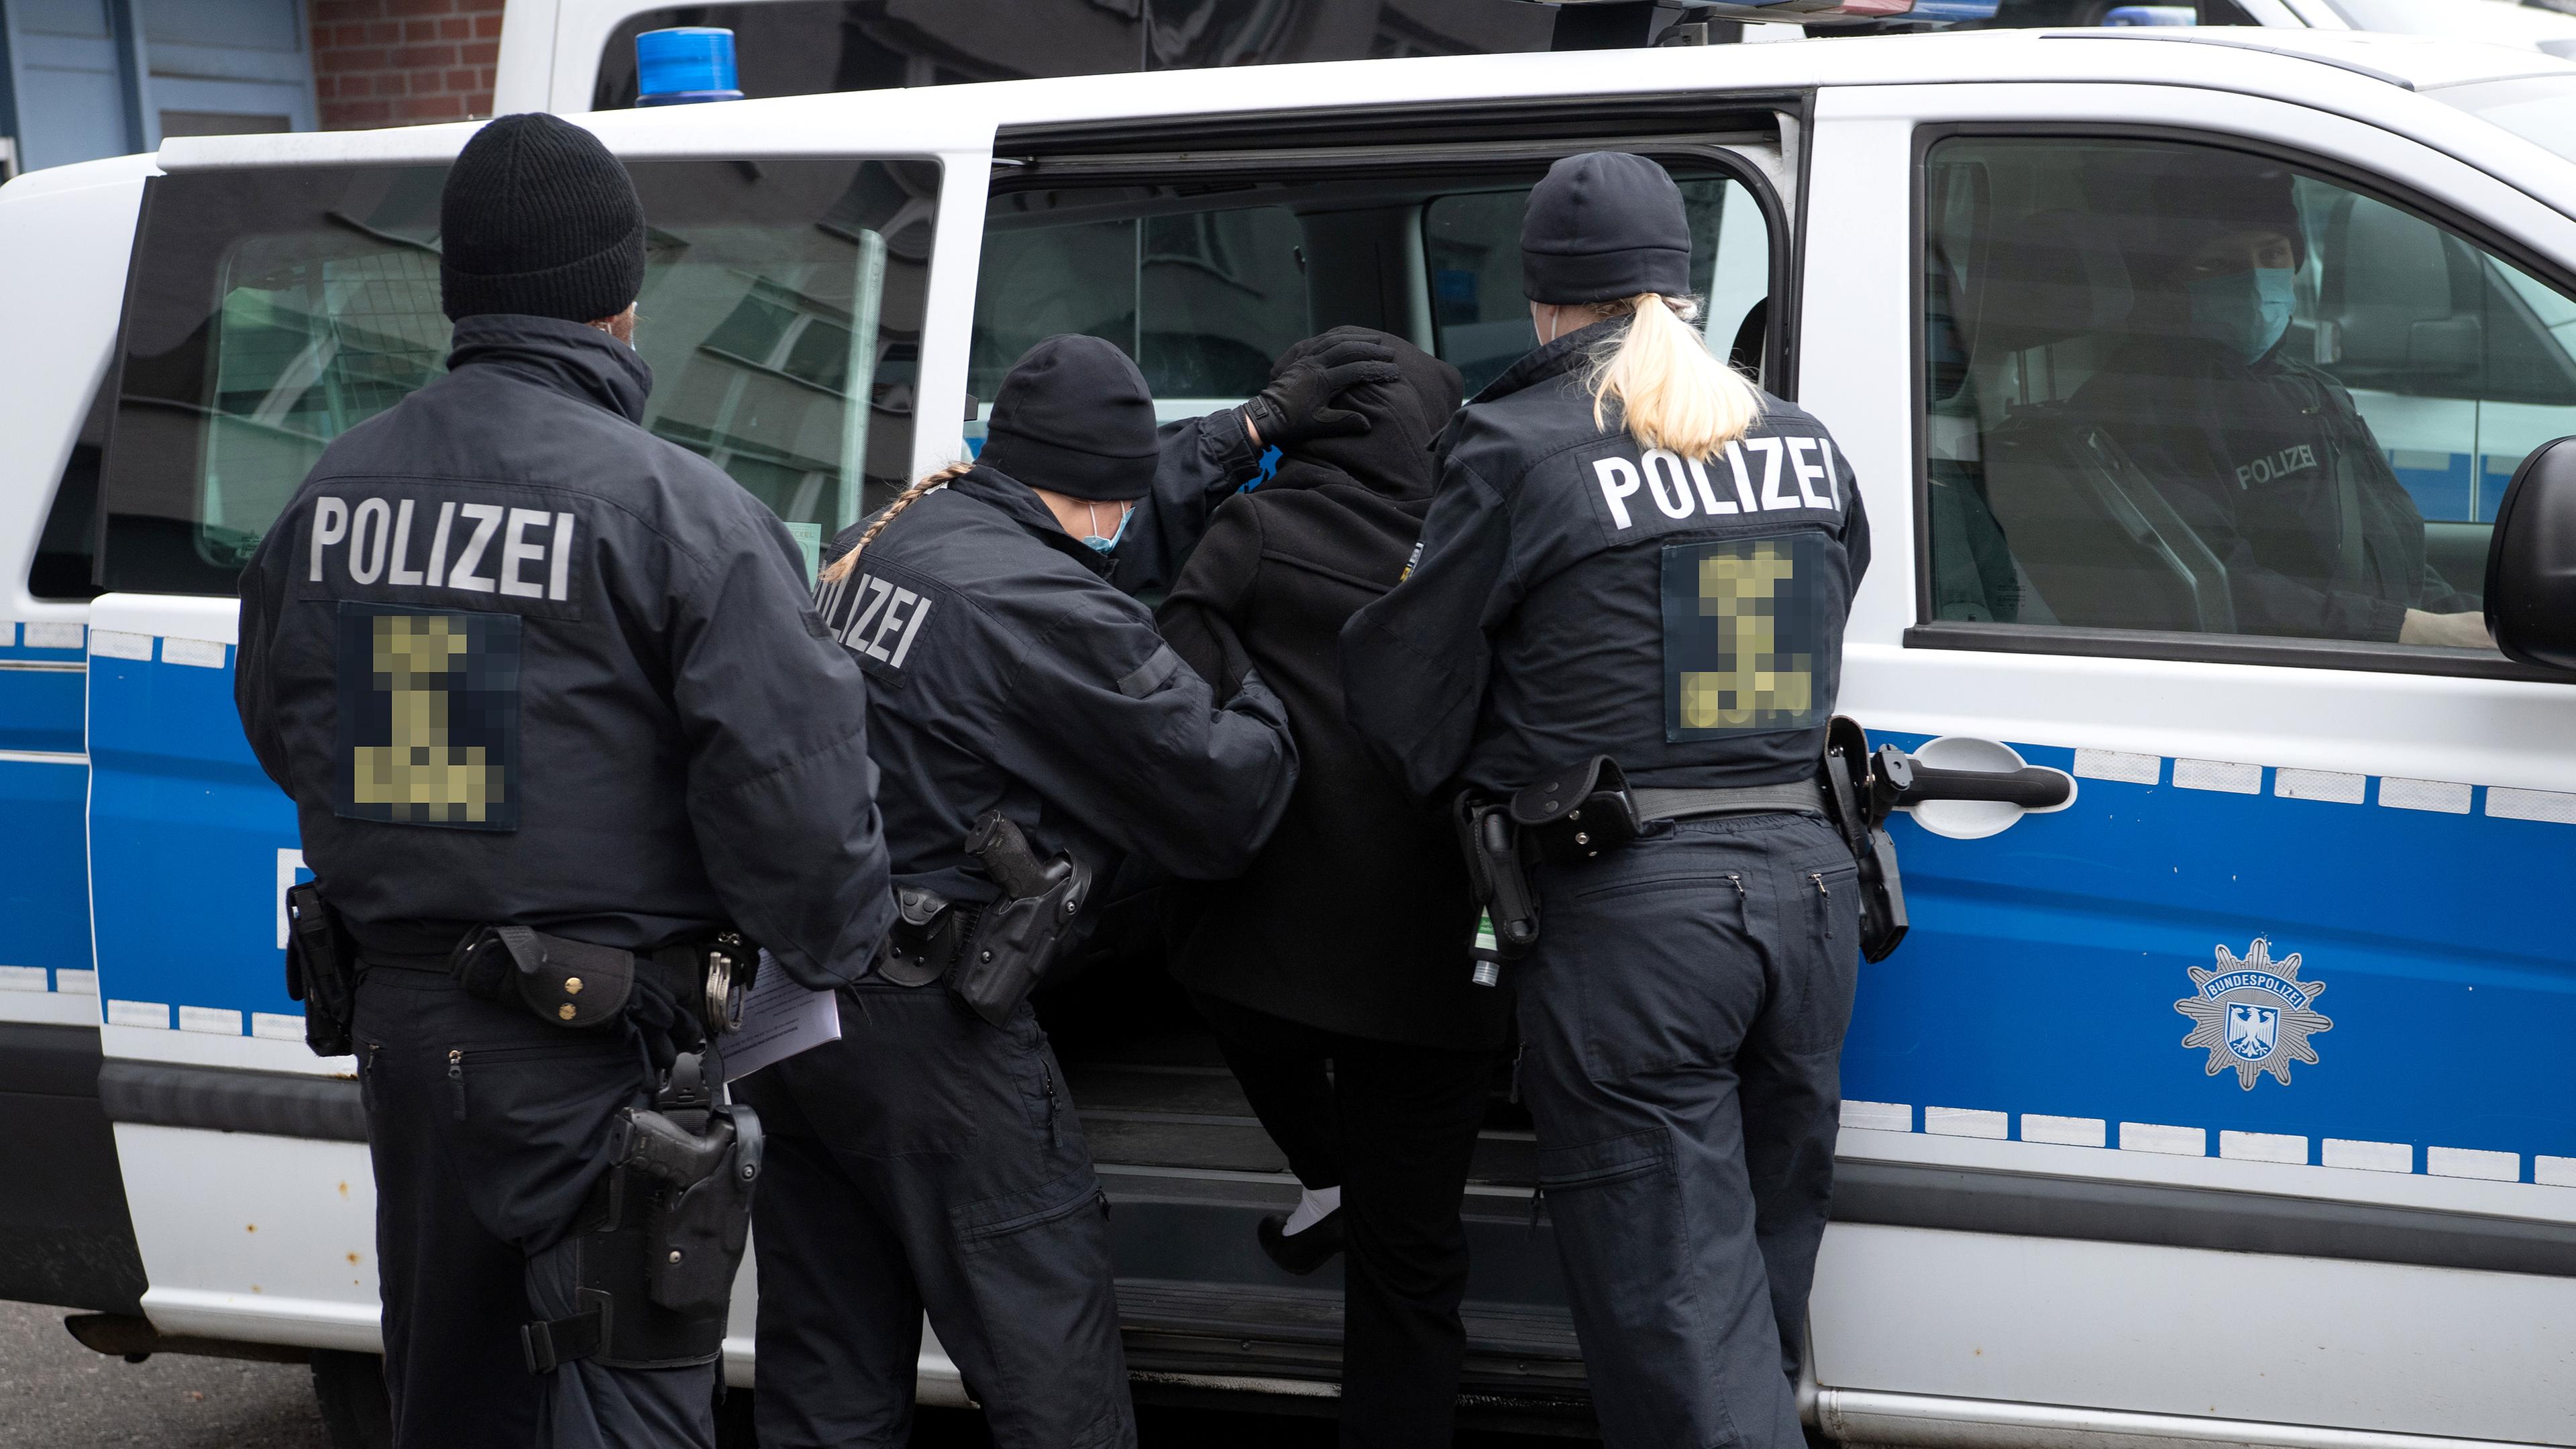 Deutschlands Polizei wird amerikanischer: Streifenwagen bekommen US-Sirene  